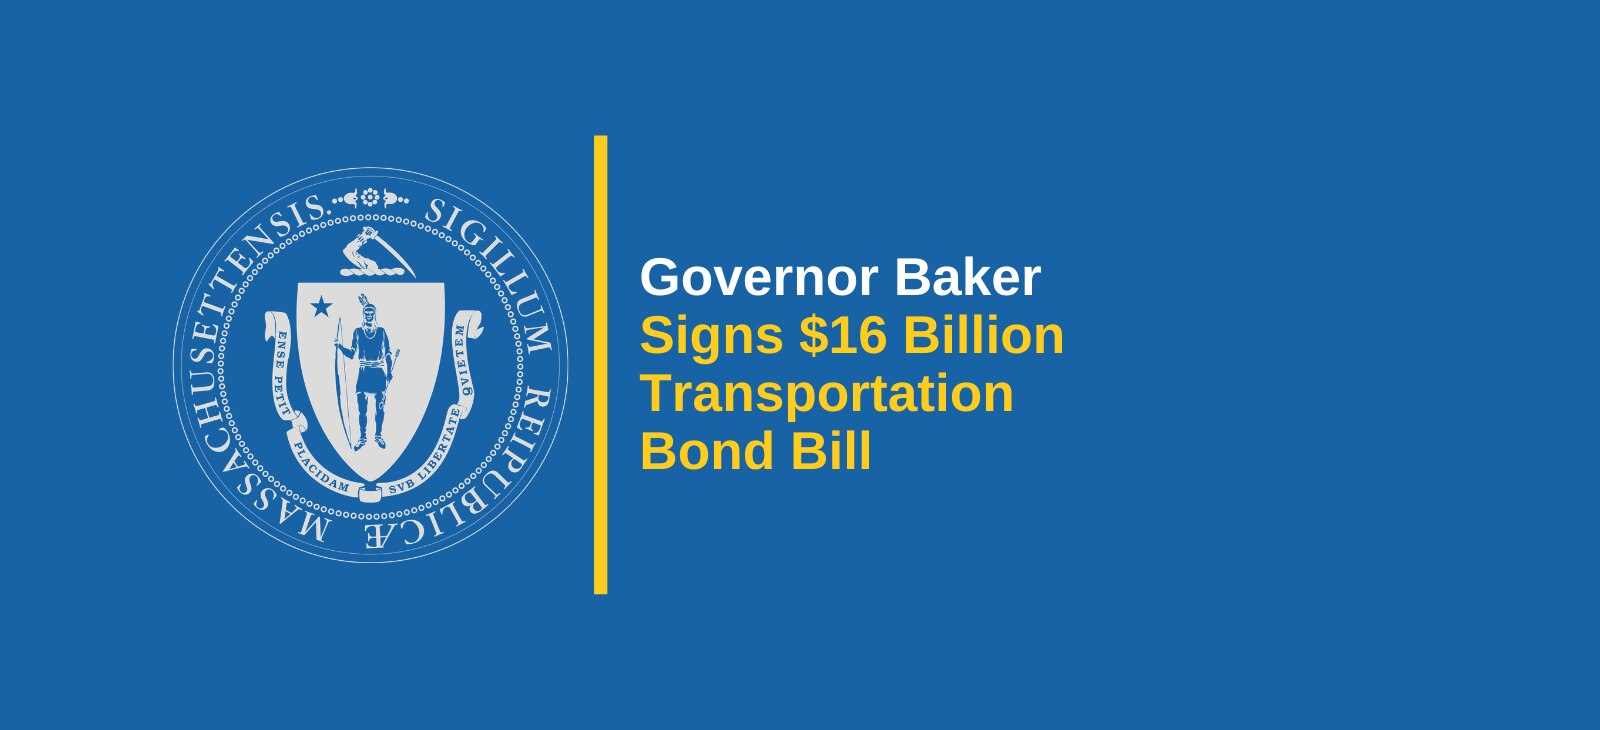 Governor Baker Signs $16 Billion Transportation Bond Bill